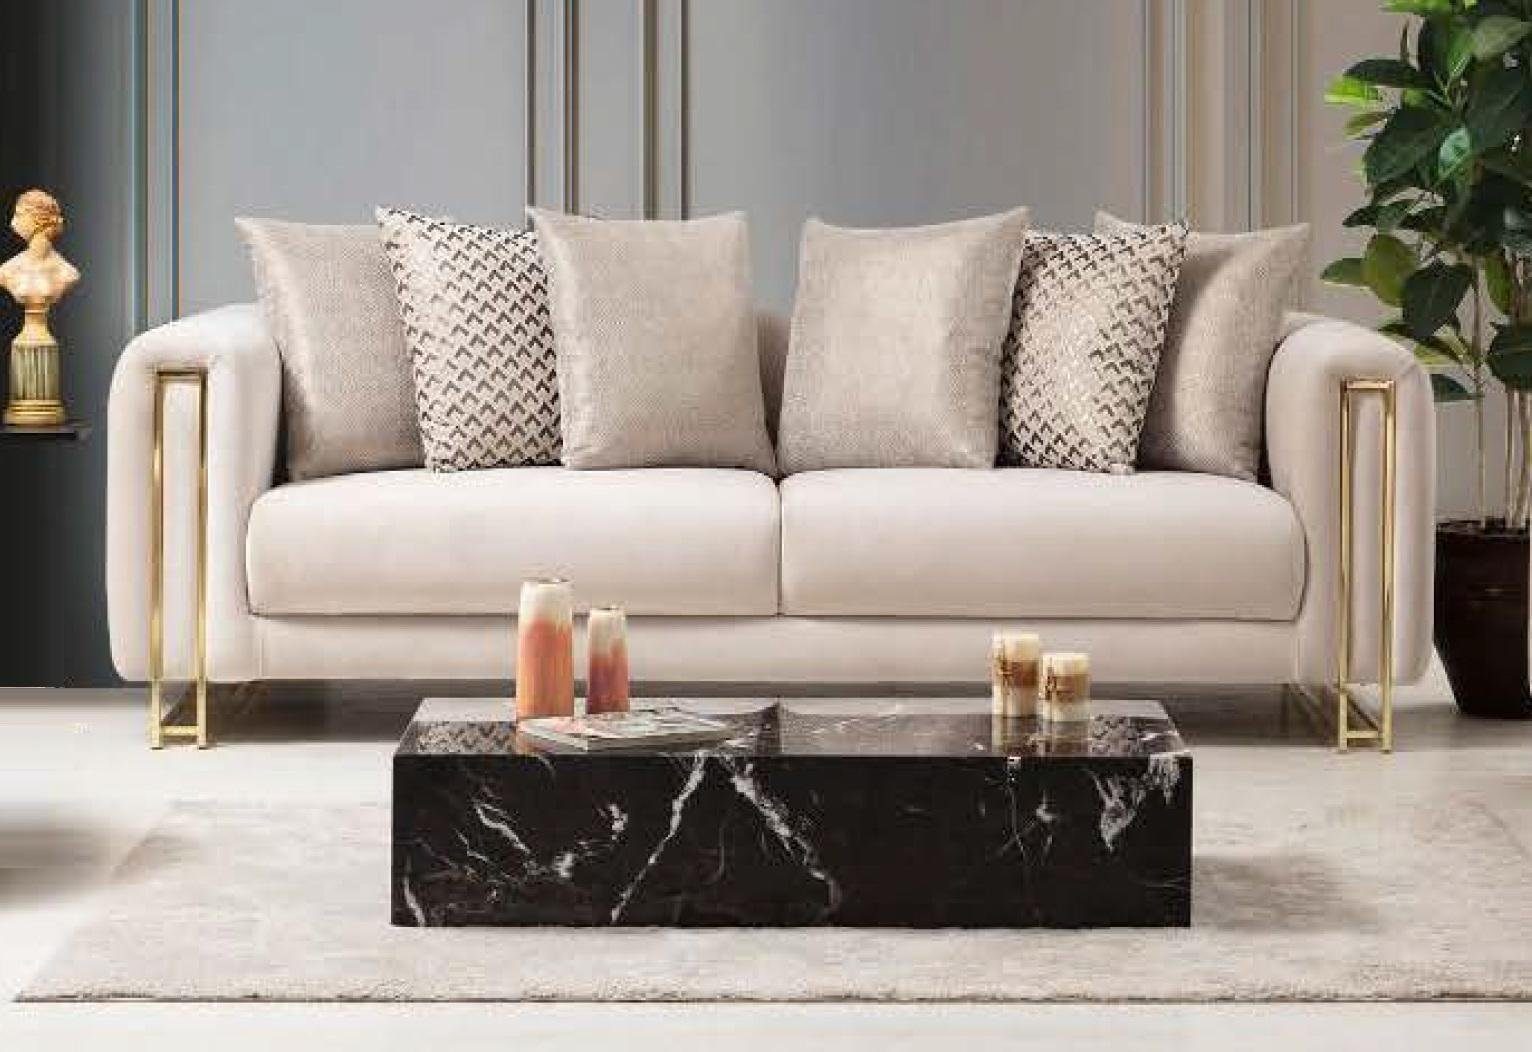 JVmoebel 3-Sitzer Design Textil 3 in Sitzer Couch, Weiß Europe Made Modern Elegant Sofa